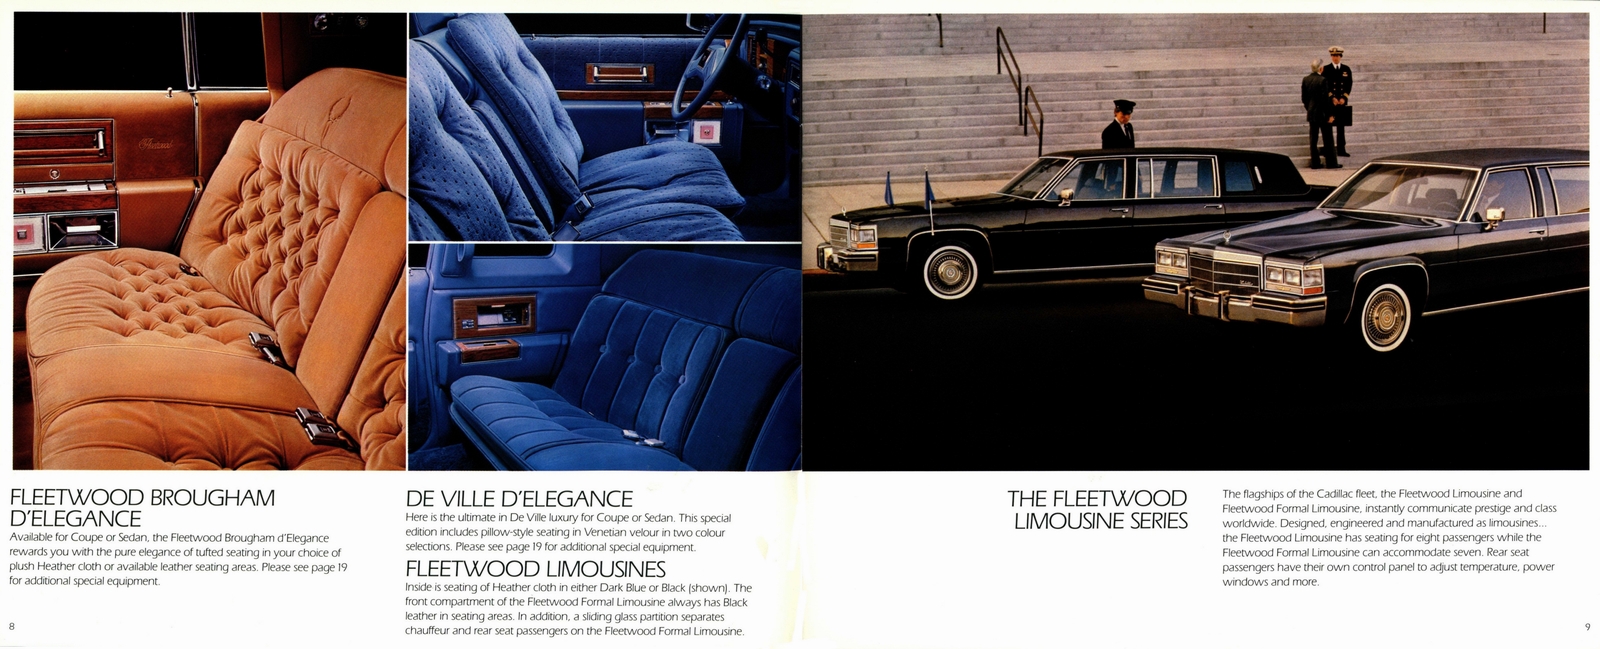 n_1984 Cadillac Full Line Prestige (Cdn)-08-09.jpg